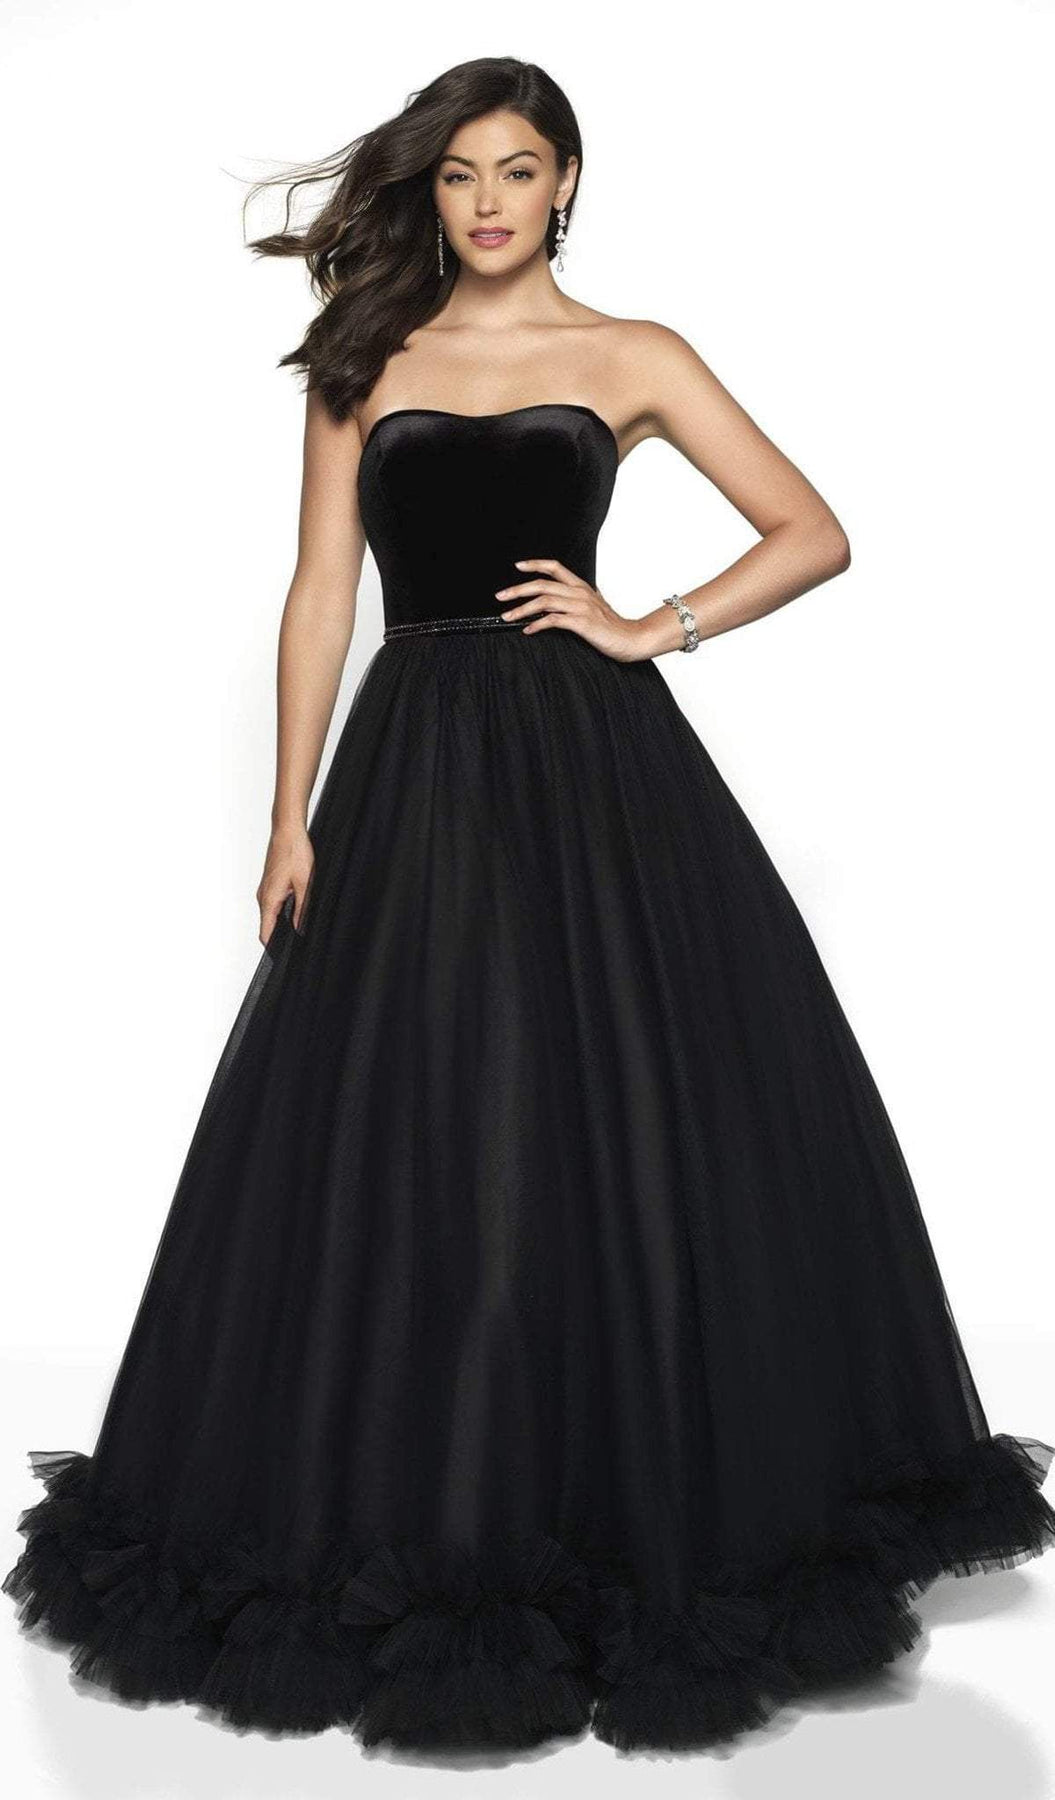 Blush by Alexia Designs - 5726 Sweetheart Ruffled Ballgown Ball Gowns 0 / Black